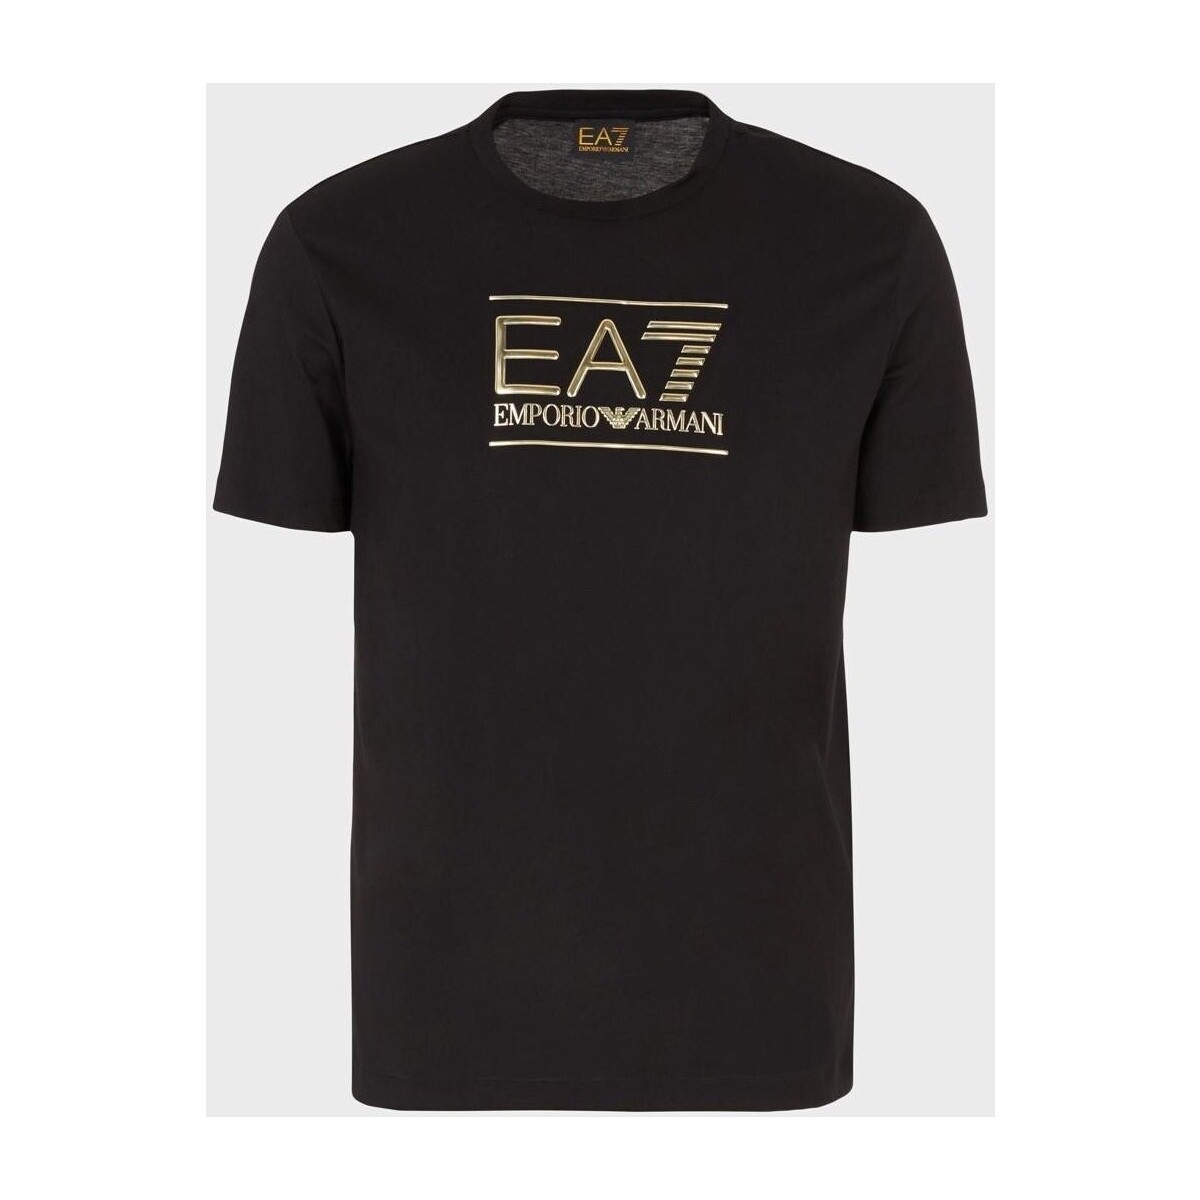 tekstylia Męskie T-shirty z krótkim rękawem Ea7 Emporio Armani  Wielokolorowy